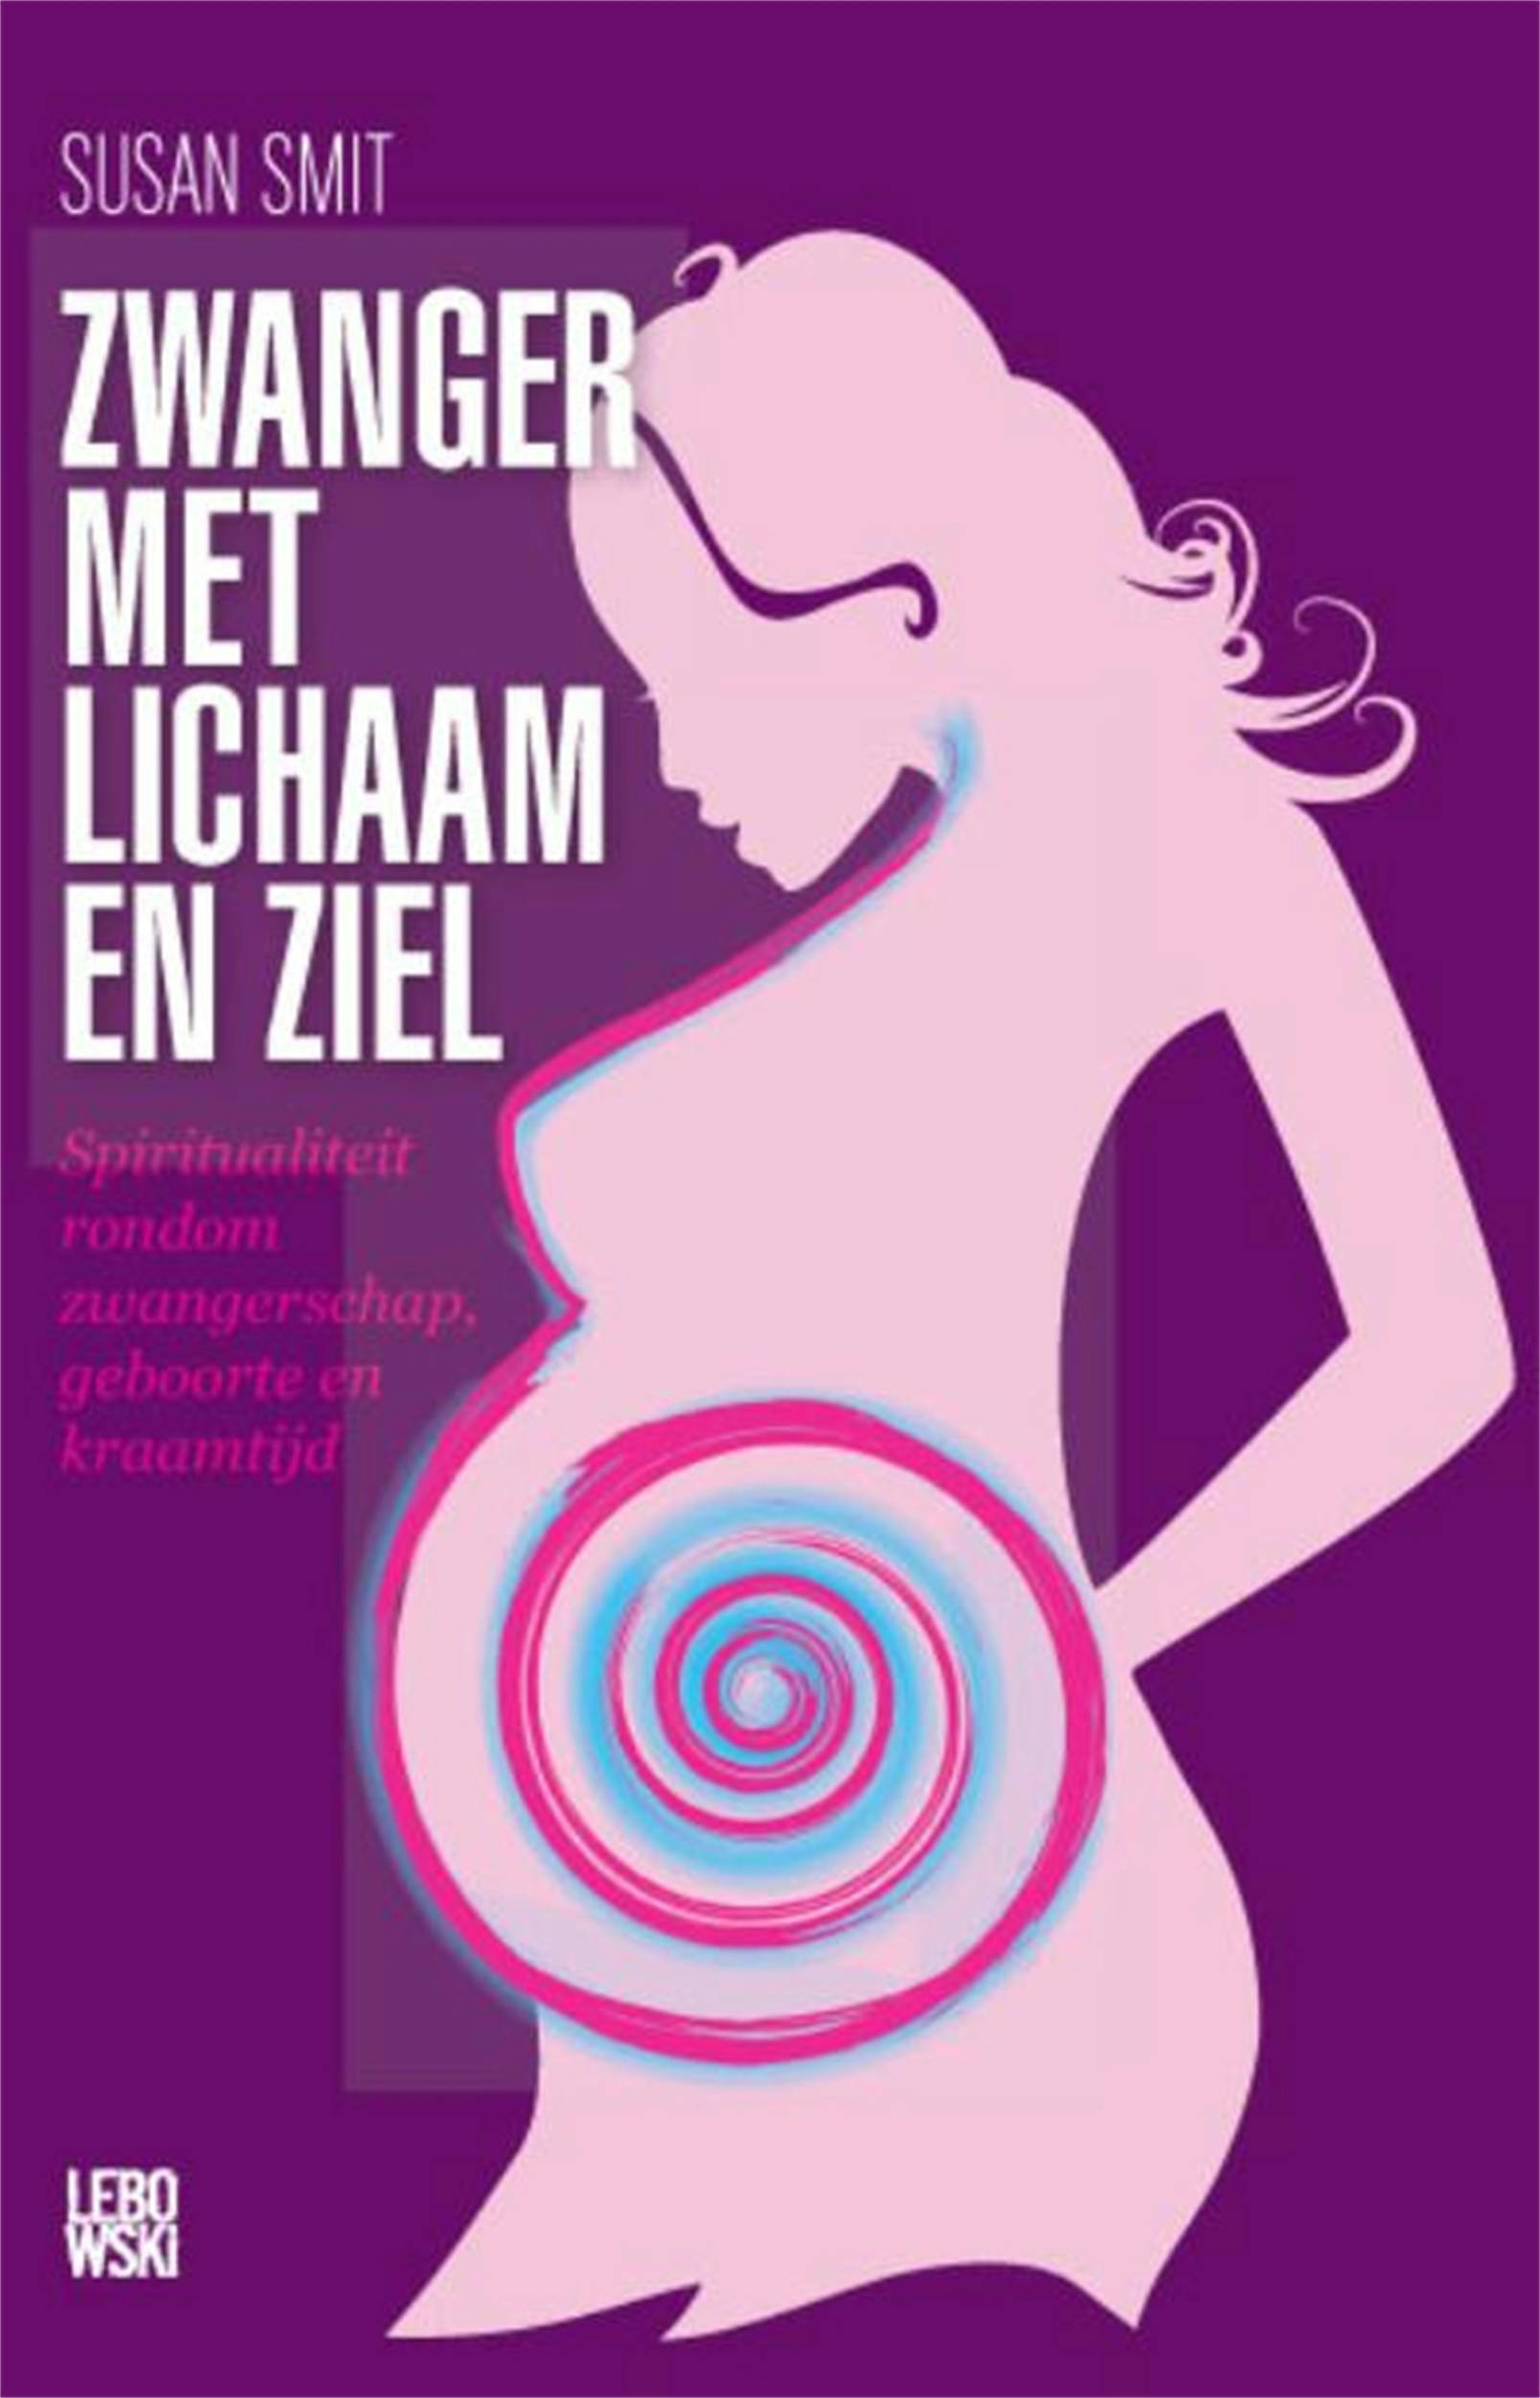 Zwanger met lichaam en ziel: spiritualiteit rondom zwangerschap, geboorte en kraamtijd - undefined